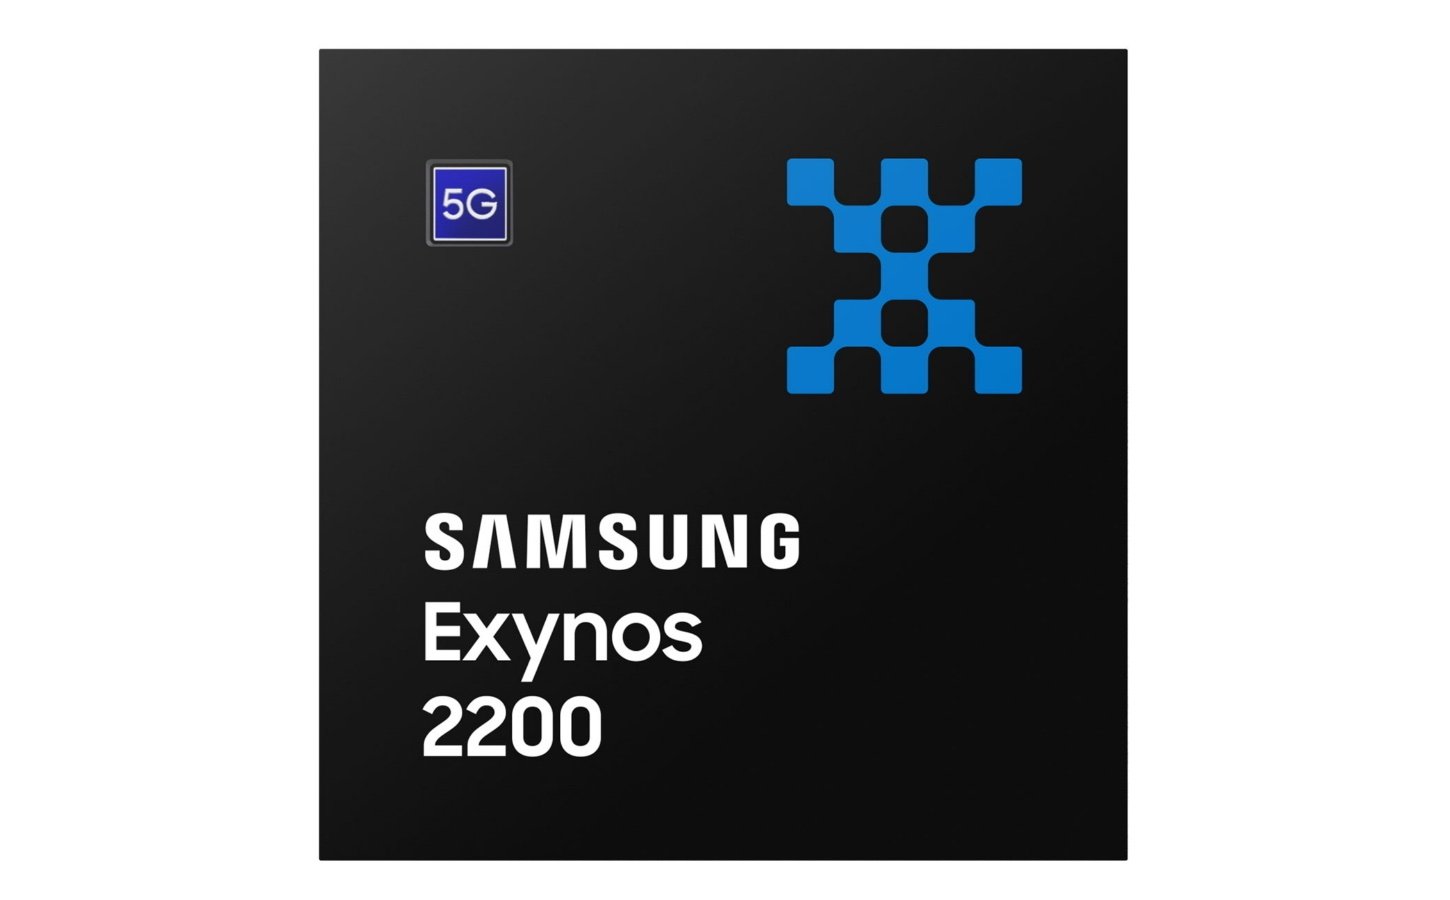 Samsung Exynos 2200, um dos chips fabricados pela Samsung para seus dispositivos